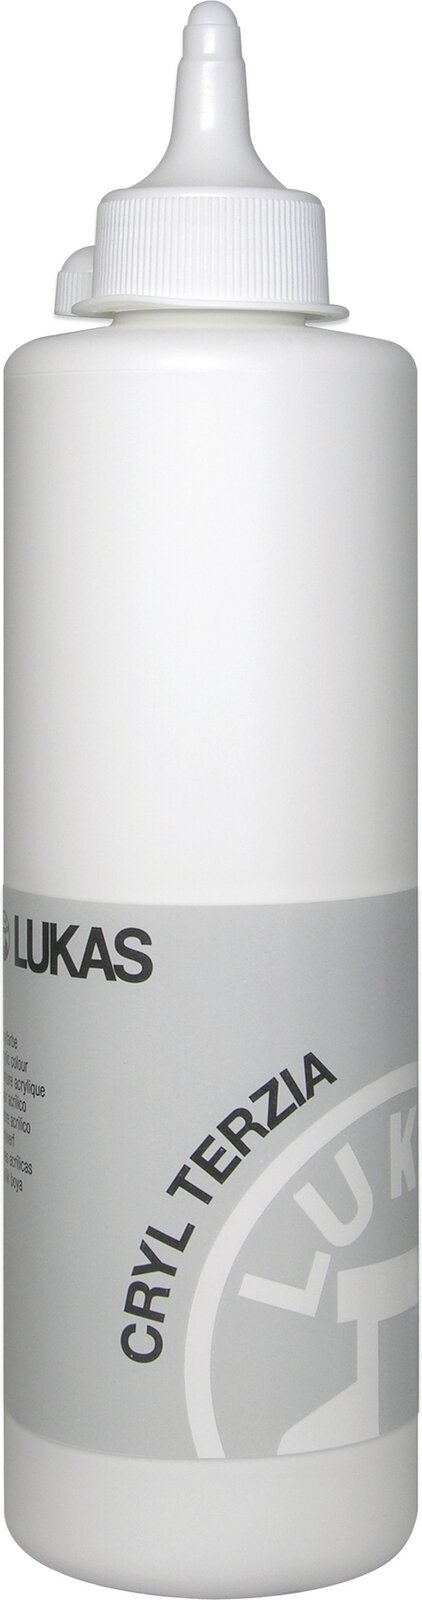 Akrylová barva Lukas Cryl Terzia Acrylic Paint Plastic Bottle Akrylová barva Titanium White 500 ml 1 ks